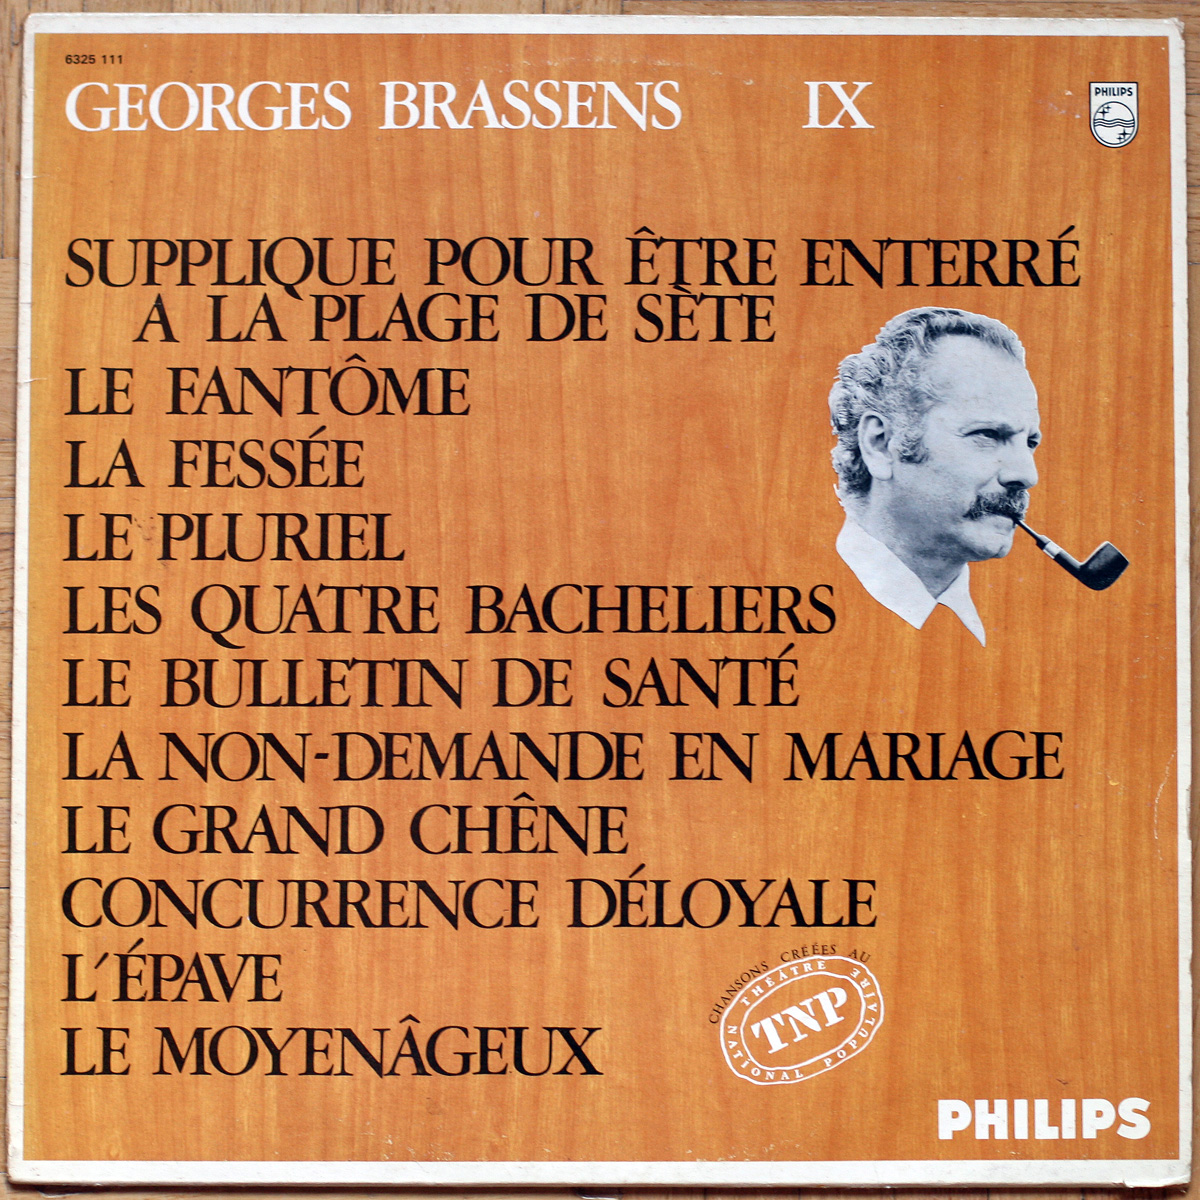 Georges Brassens • Volume n° 09 • Supplique pour être enterré à la plage de Sète • Philips 6321 111